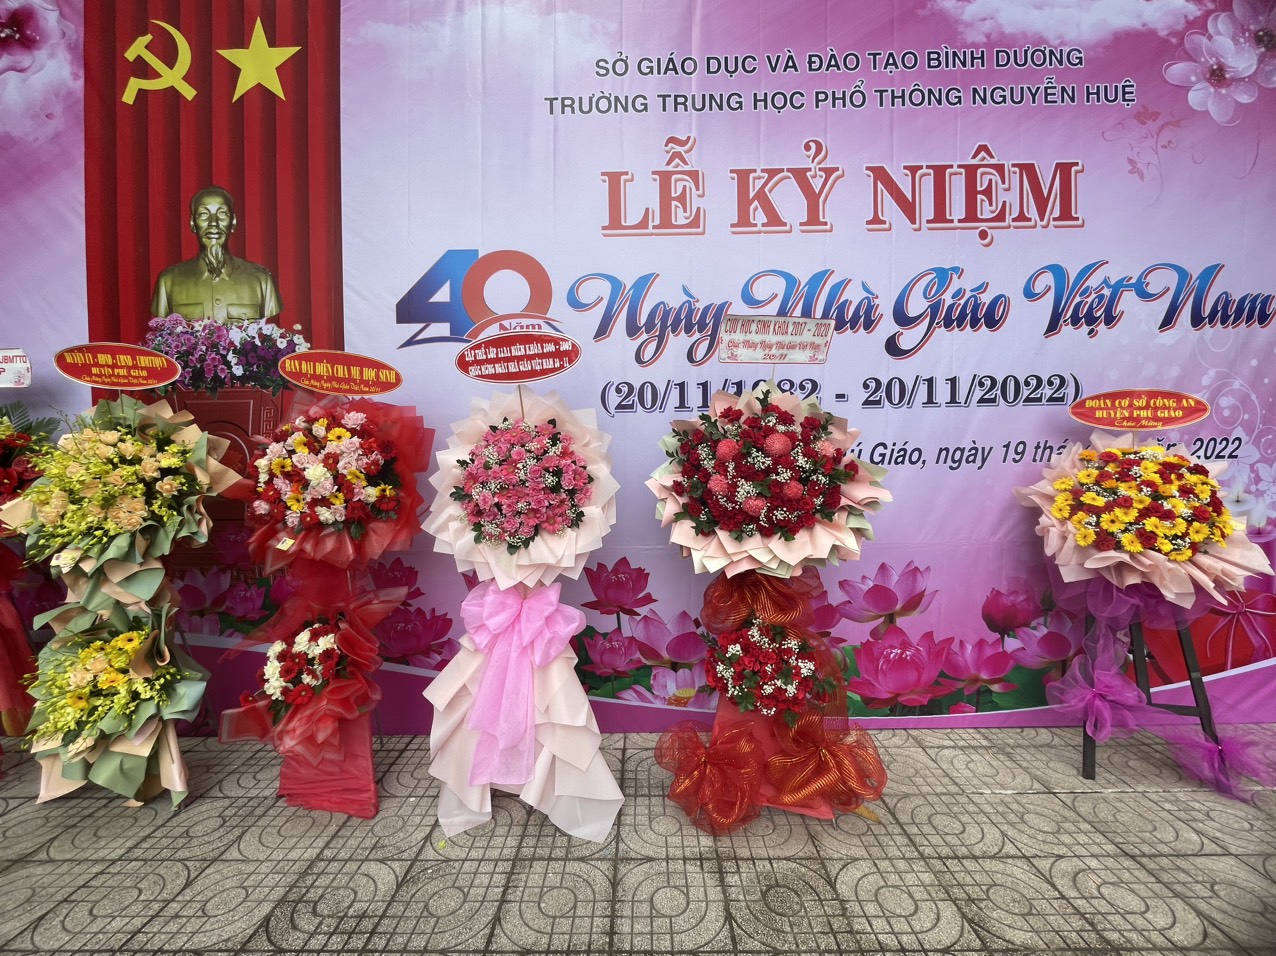 Trường THPT Nguyễn Huệ tổ chức lễ kỷ niệm 40 năm ngày nhà giáo Việt Nam